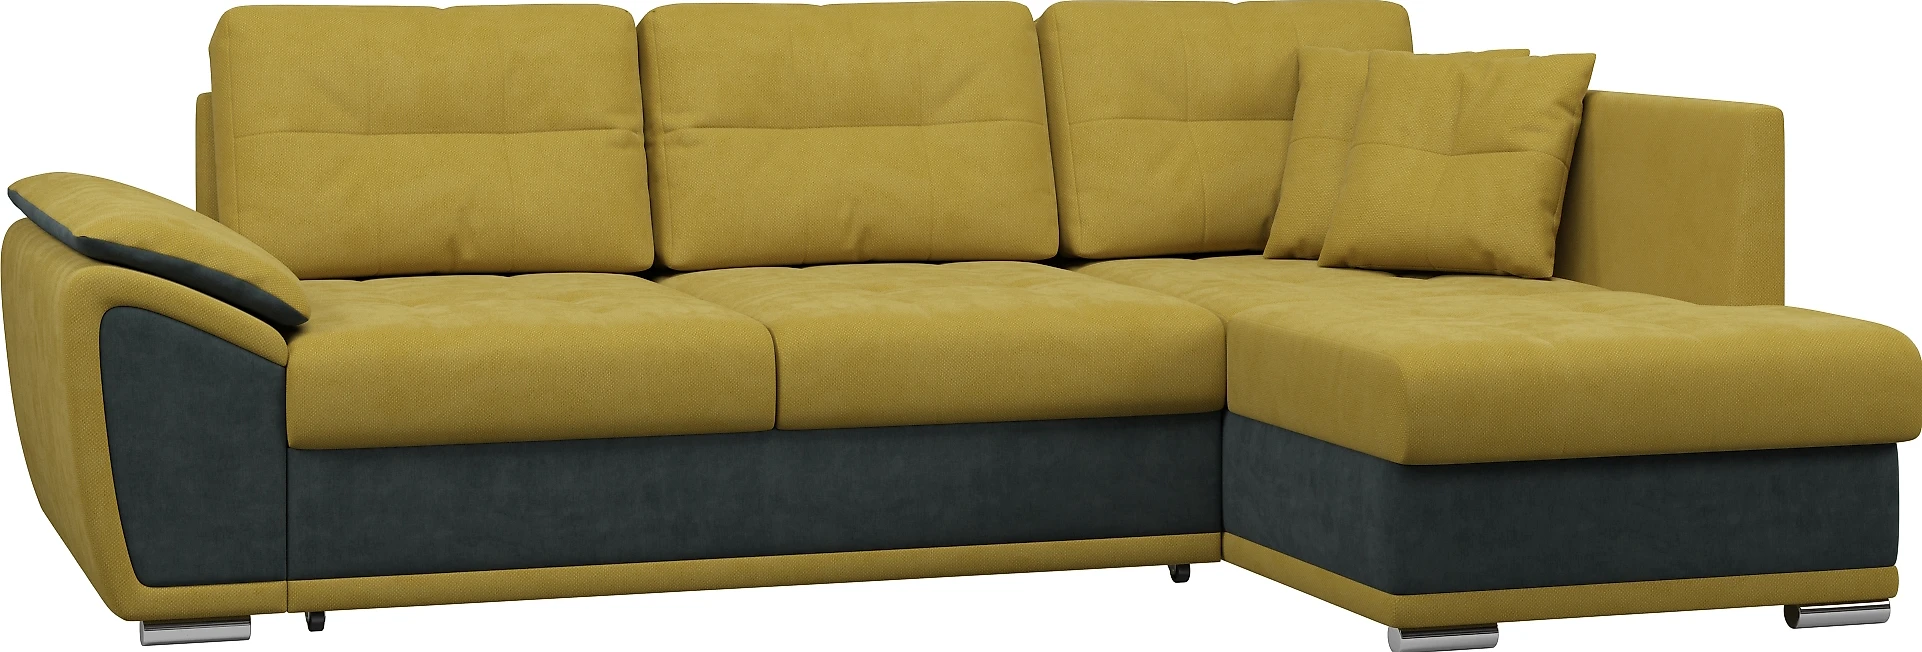 Угловой диван в классическом стиле Риттэр Плюш Мастард